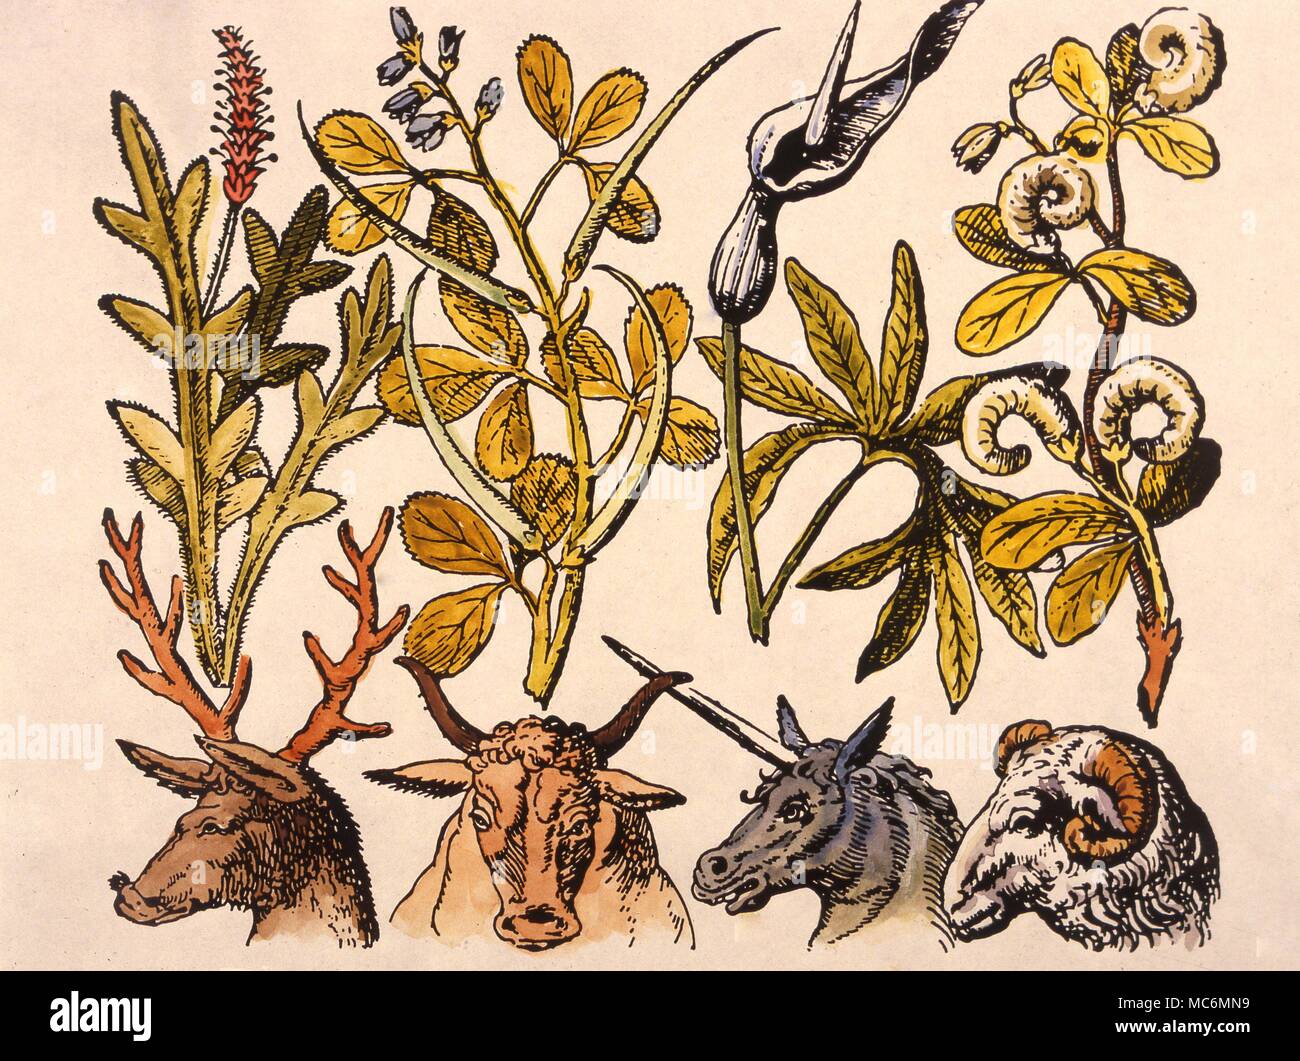 Les herbes, les plantes et les animaux, fin du 16e siècle imprimer. Banque D'Images